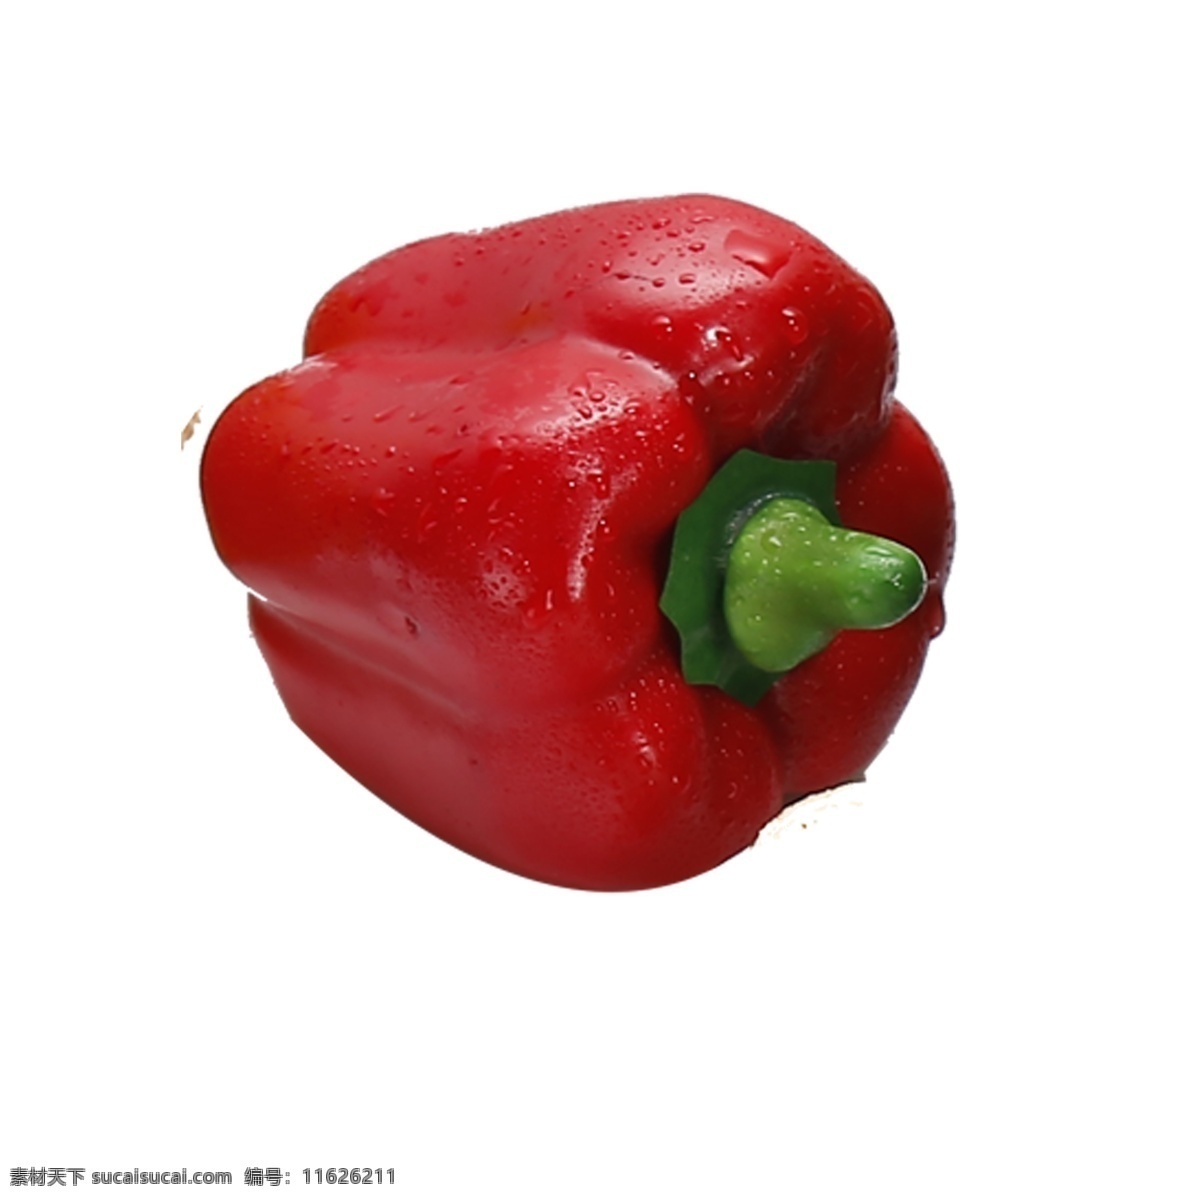 红色 辣椒 免 抠 图 红通通 新鲜的蔬菜 植物蔬菜 美味的辣椒 植物果实 供料 红色的辣椒 免抠图